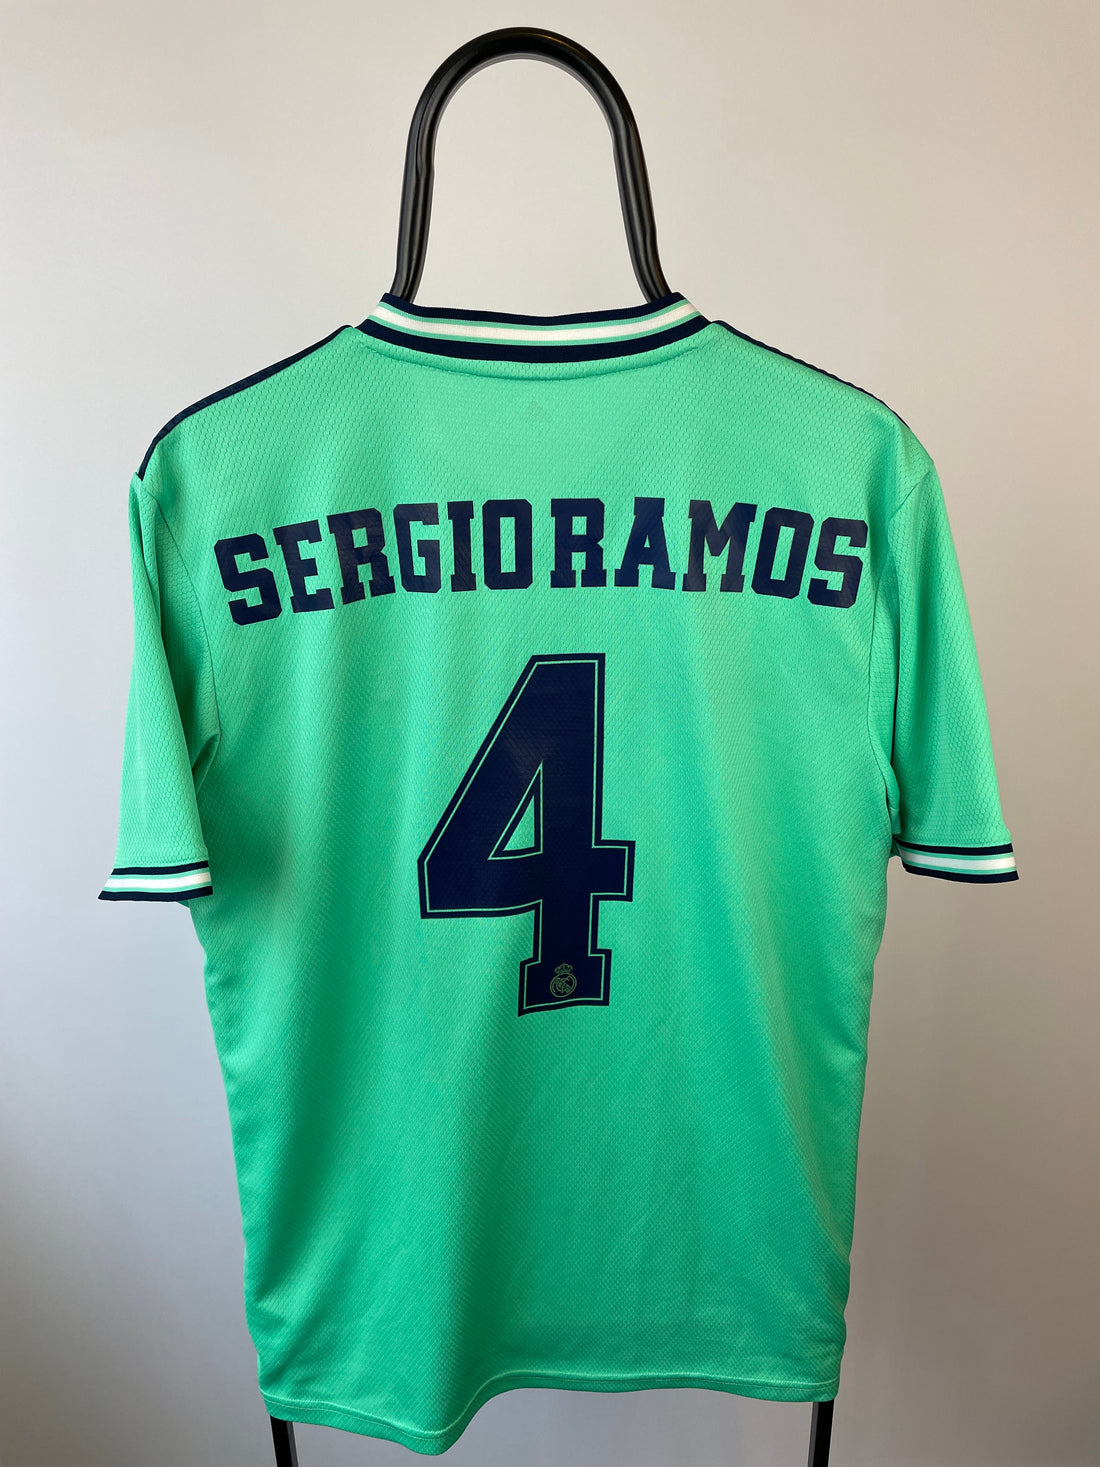 Sergio Ramos Real Madrid 19/20 3 trøje - L